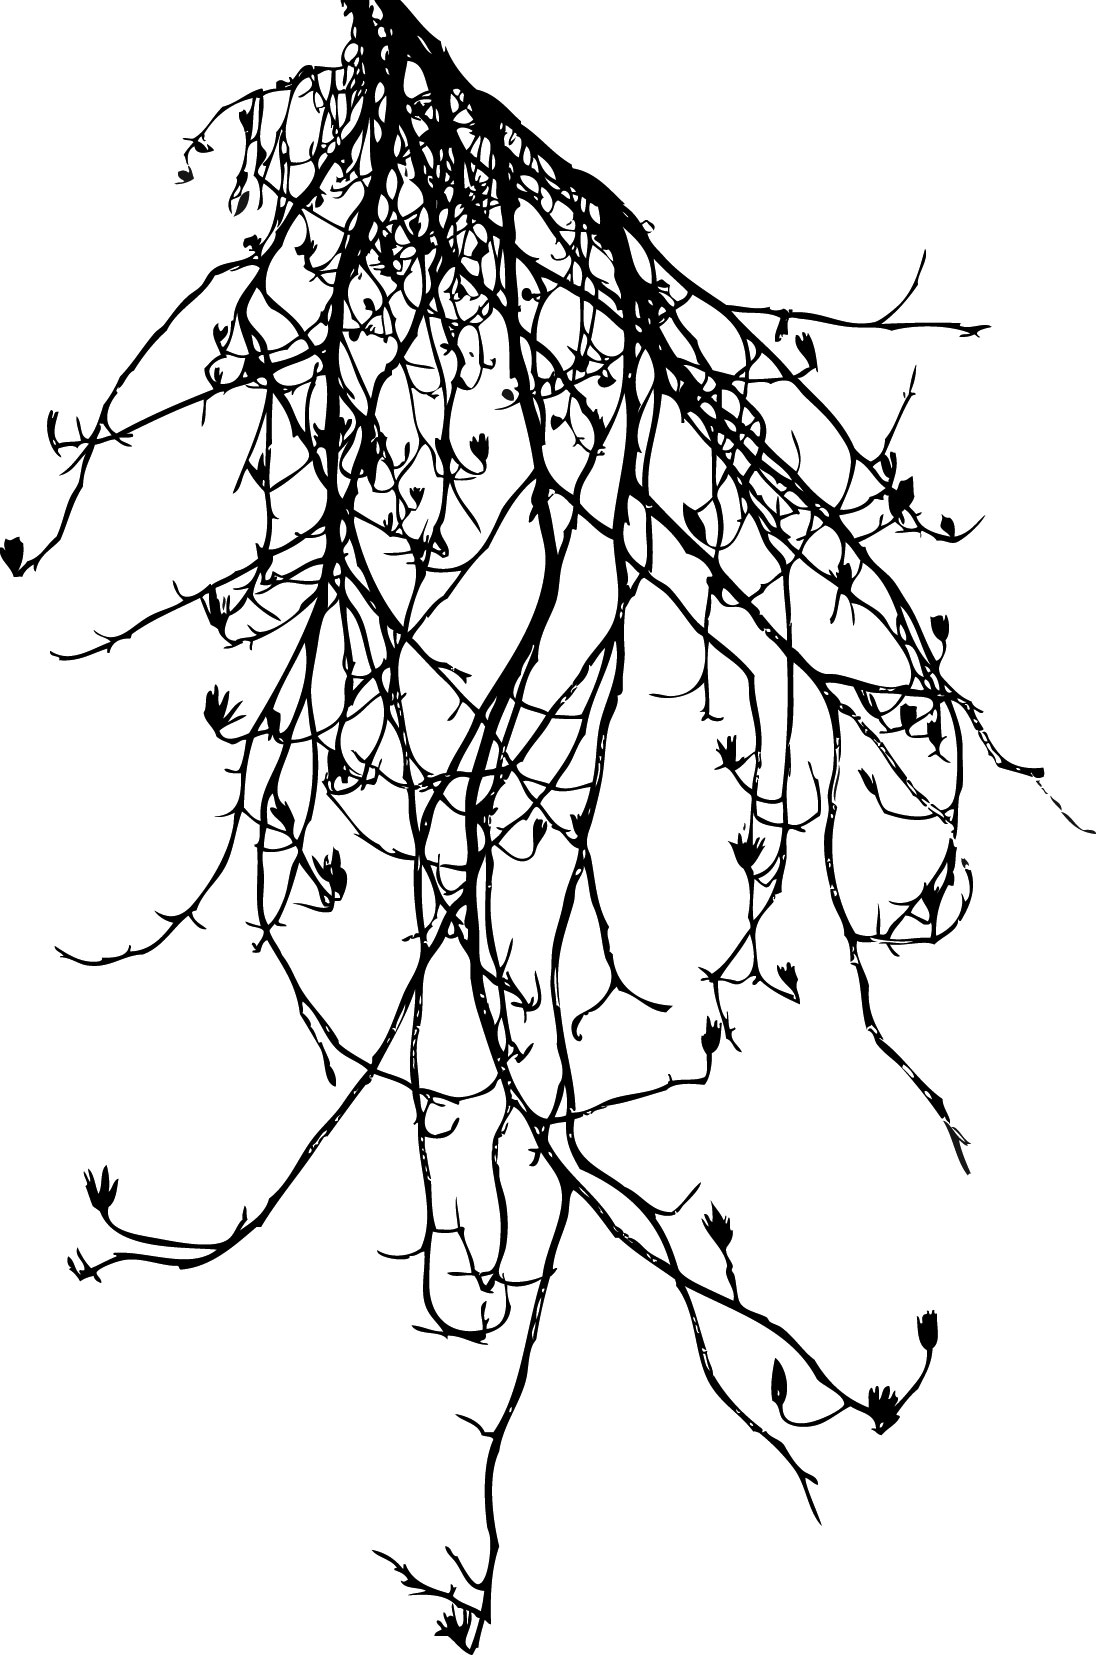 葉っぱの見本画像-白黒・枝葉